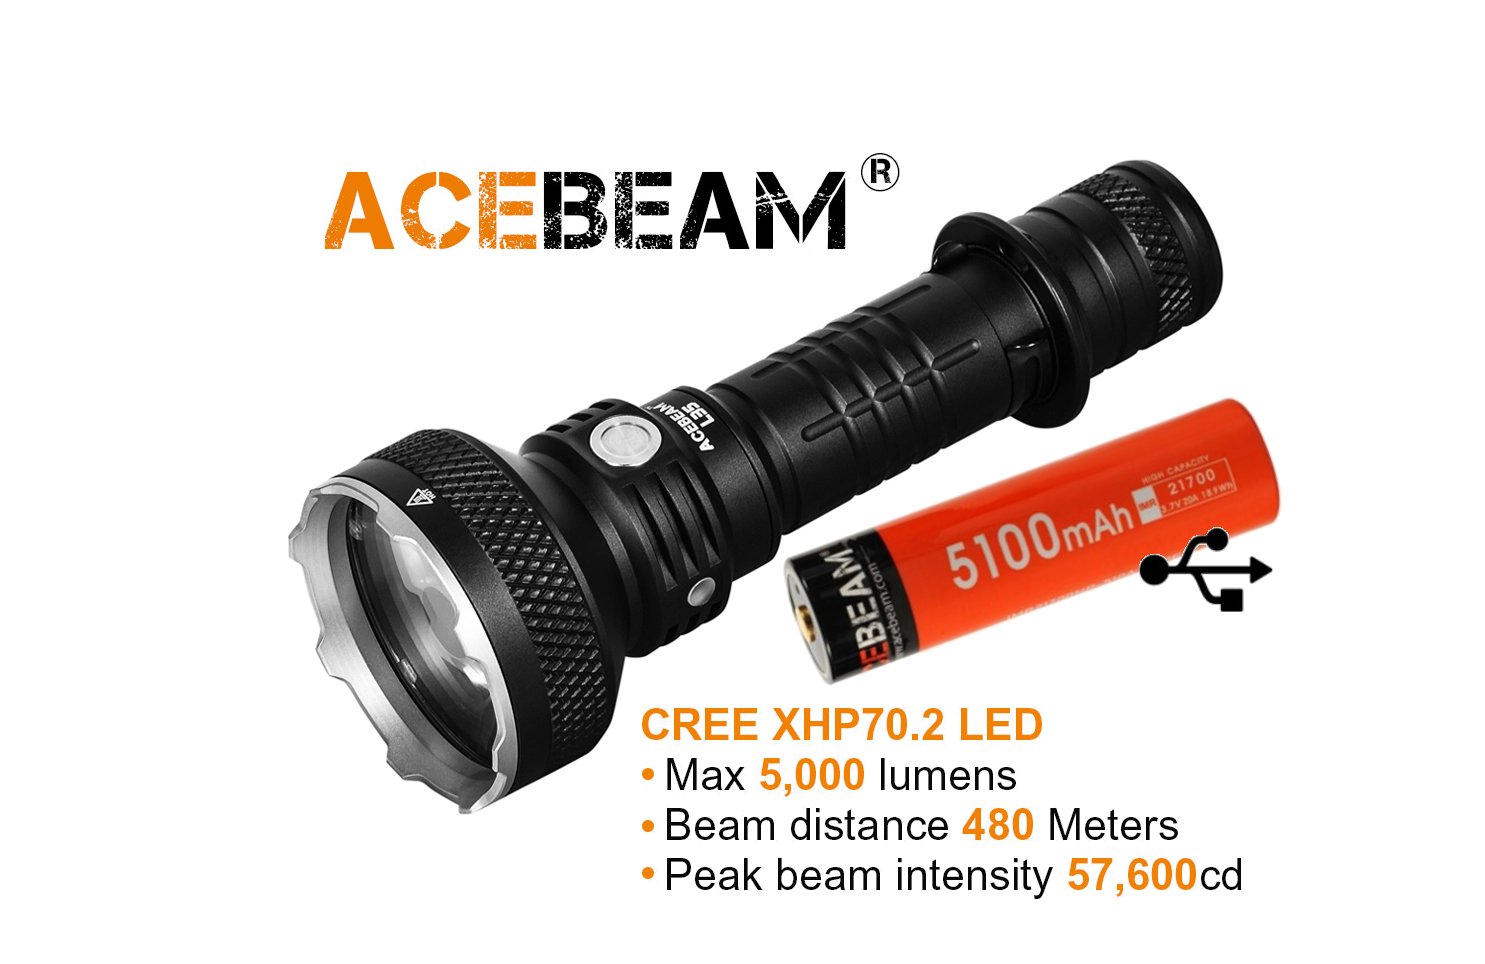 Produktbild von Acebeam L35, Wiederaufladbare Taschenlampe, CREE XHP70.2 LED, 5000 Lumen, 480 Meter, 21700 Li-ion battery (5100mAh) USB-C Akku